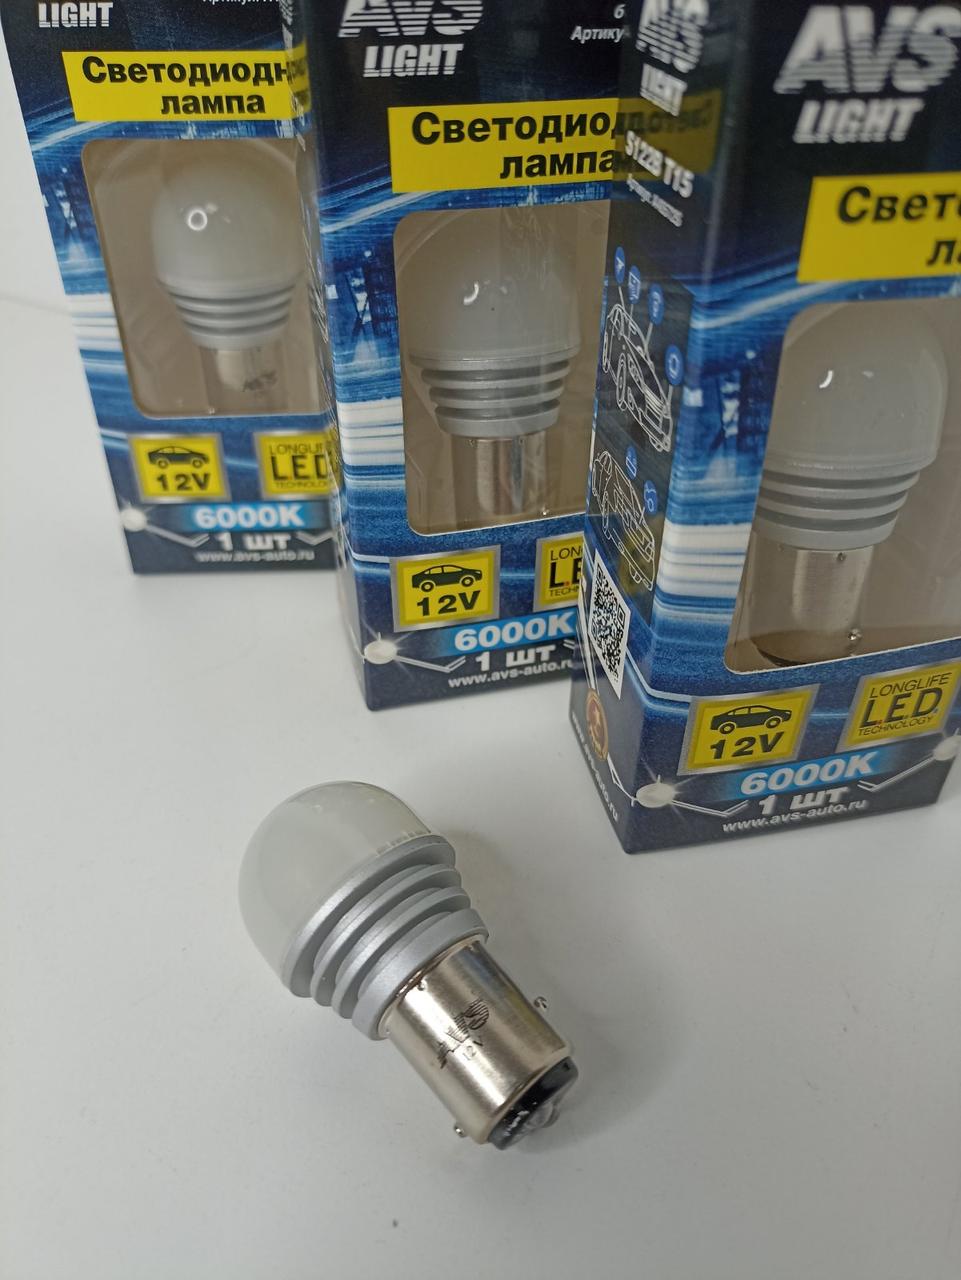 Светодиодная лампа (P21/5W), цвет - белый